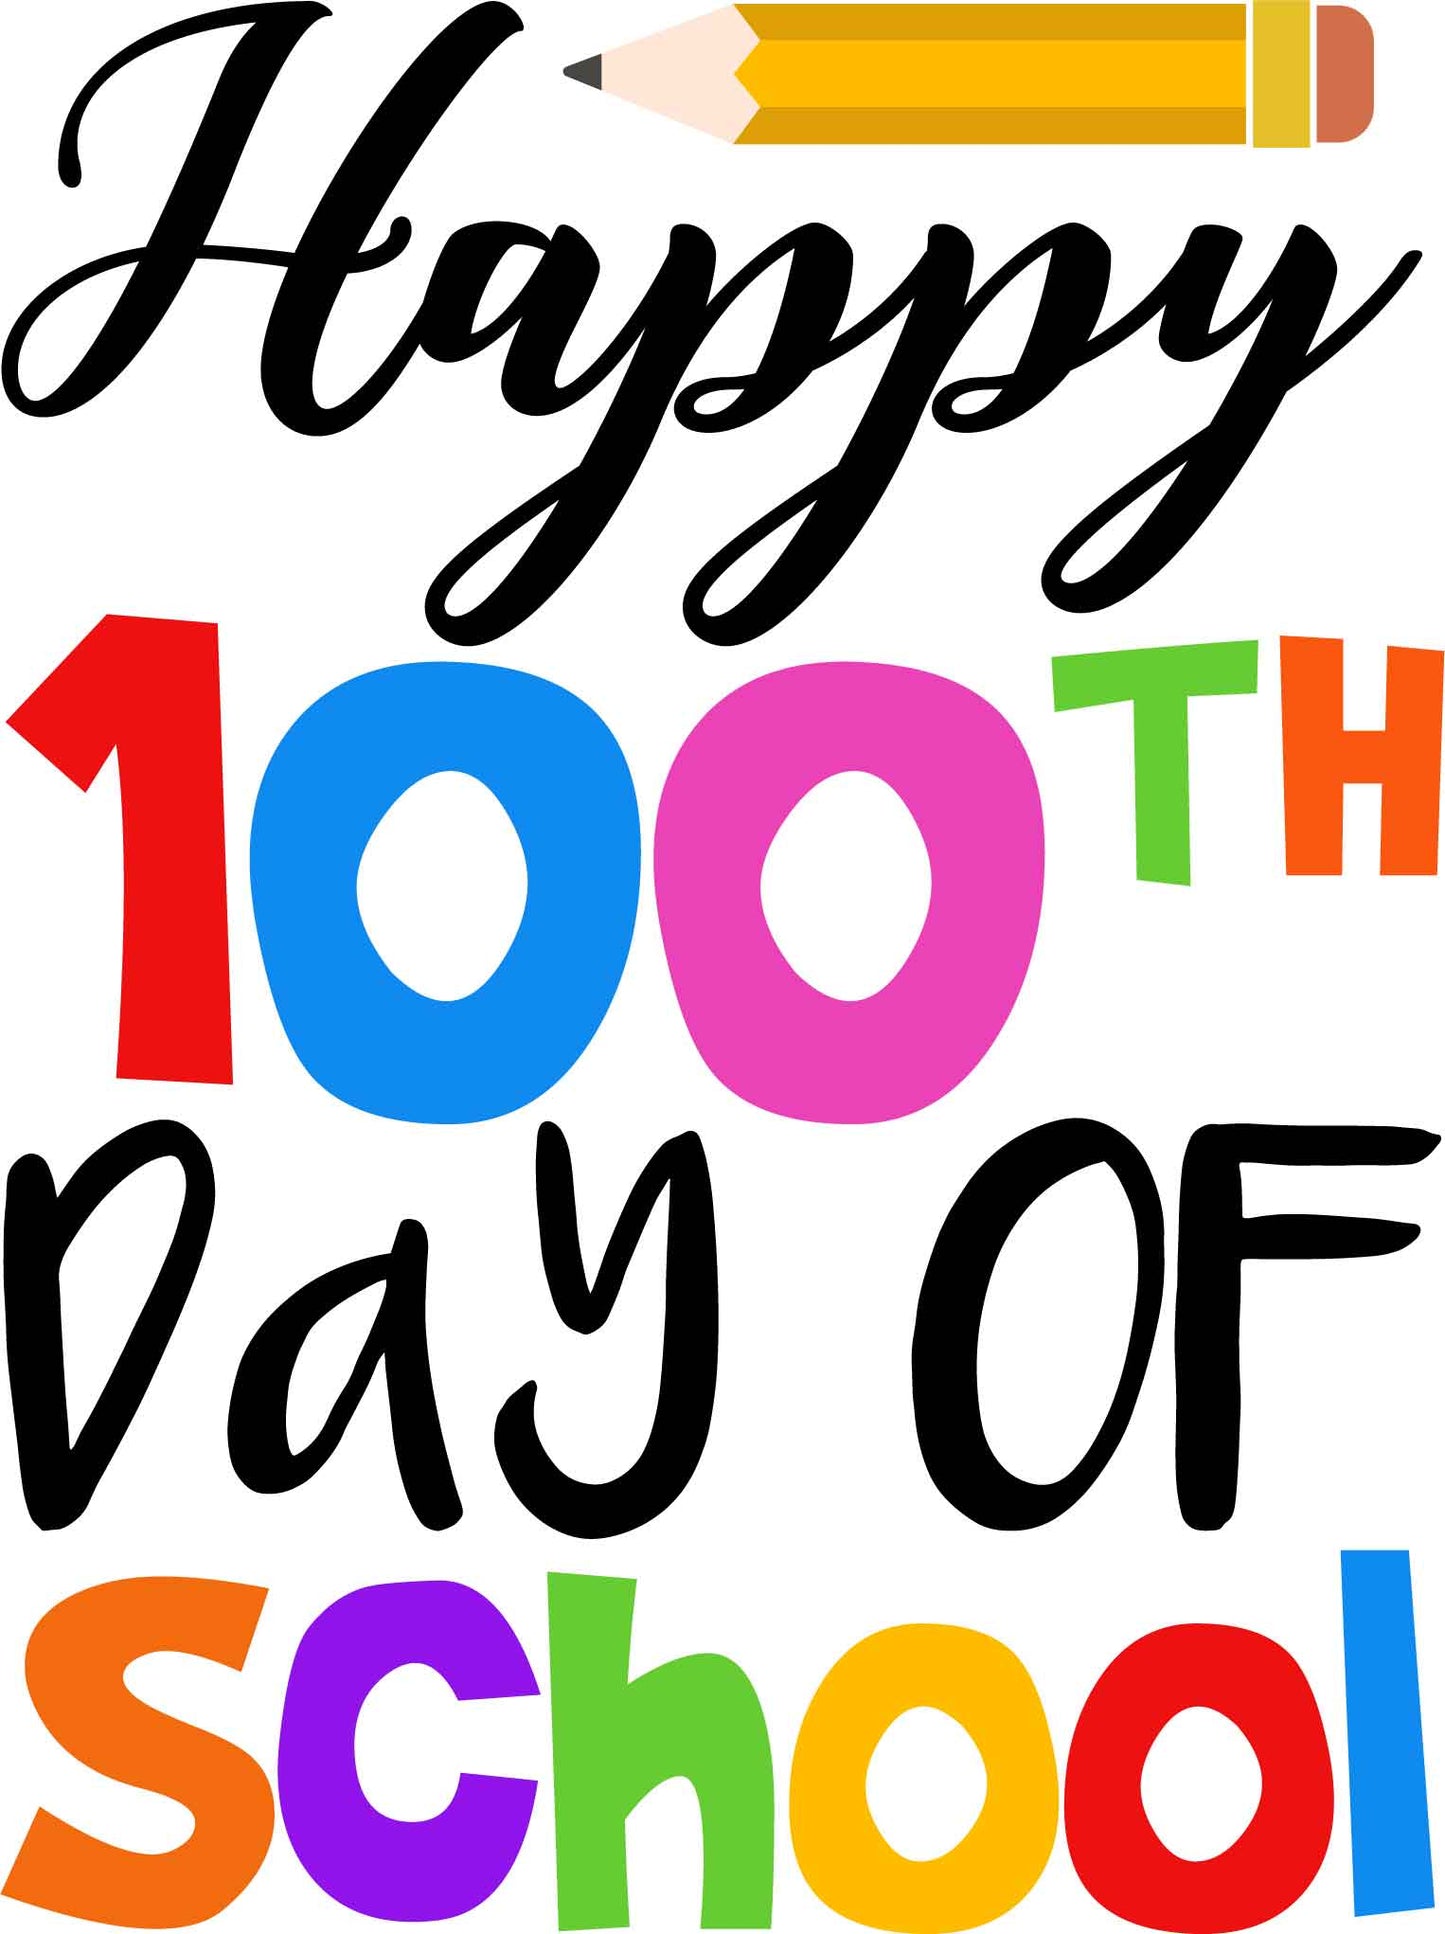 Happy 100th Day of School Pencil Design Transfer